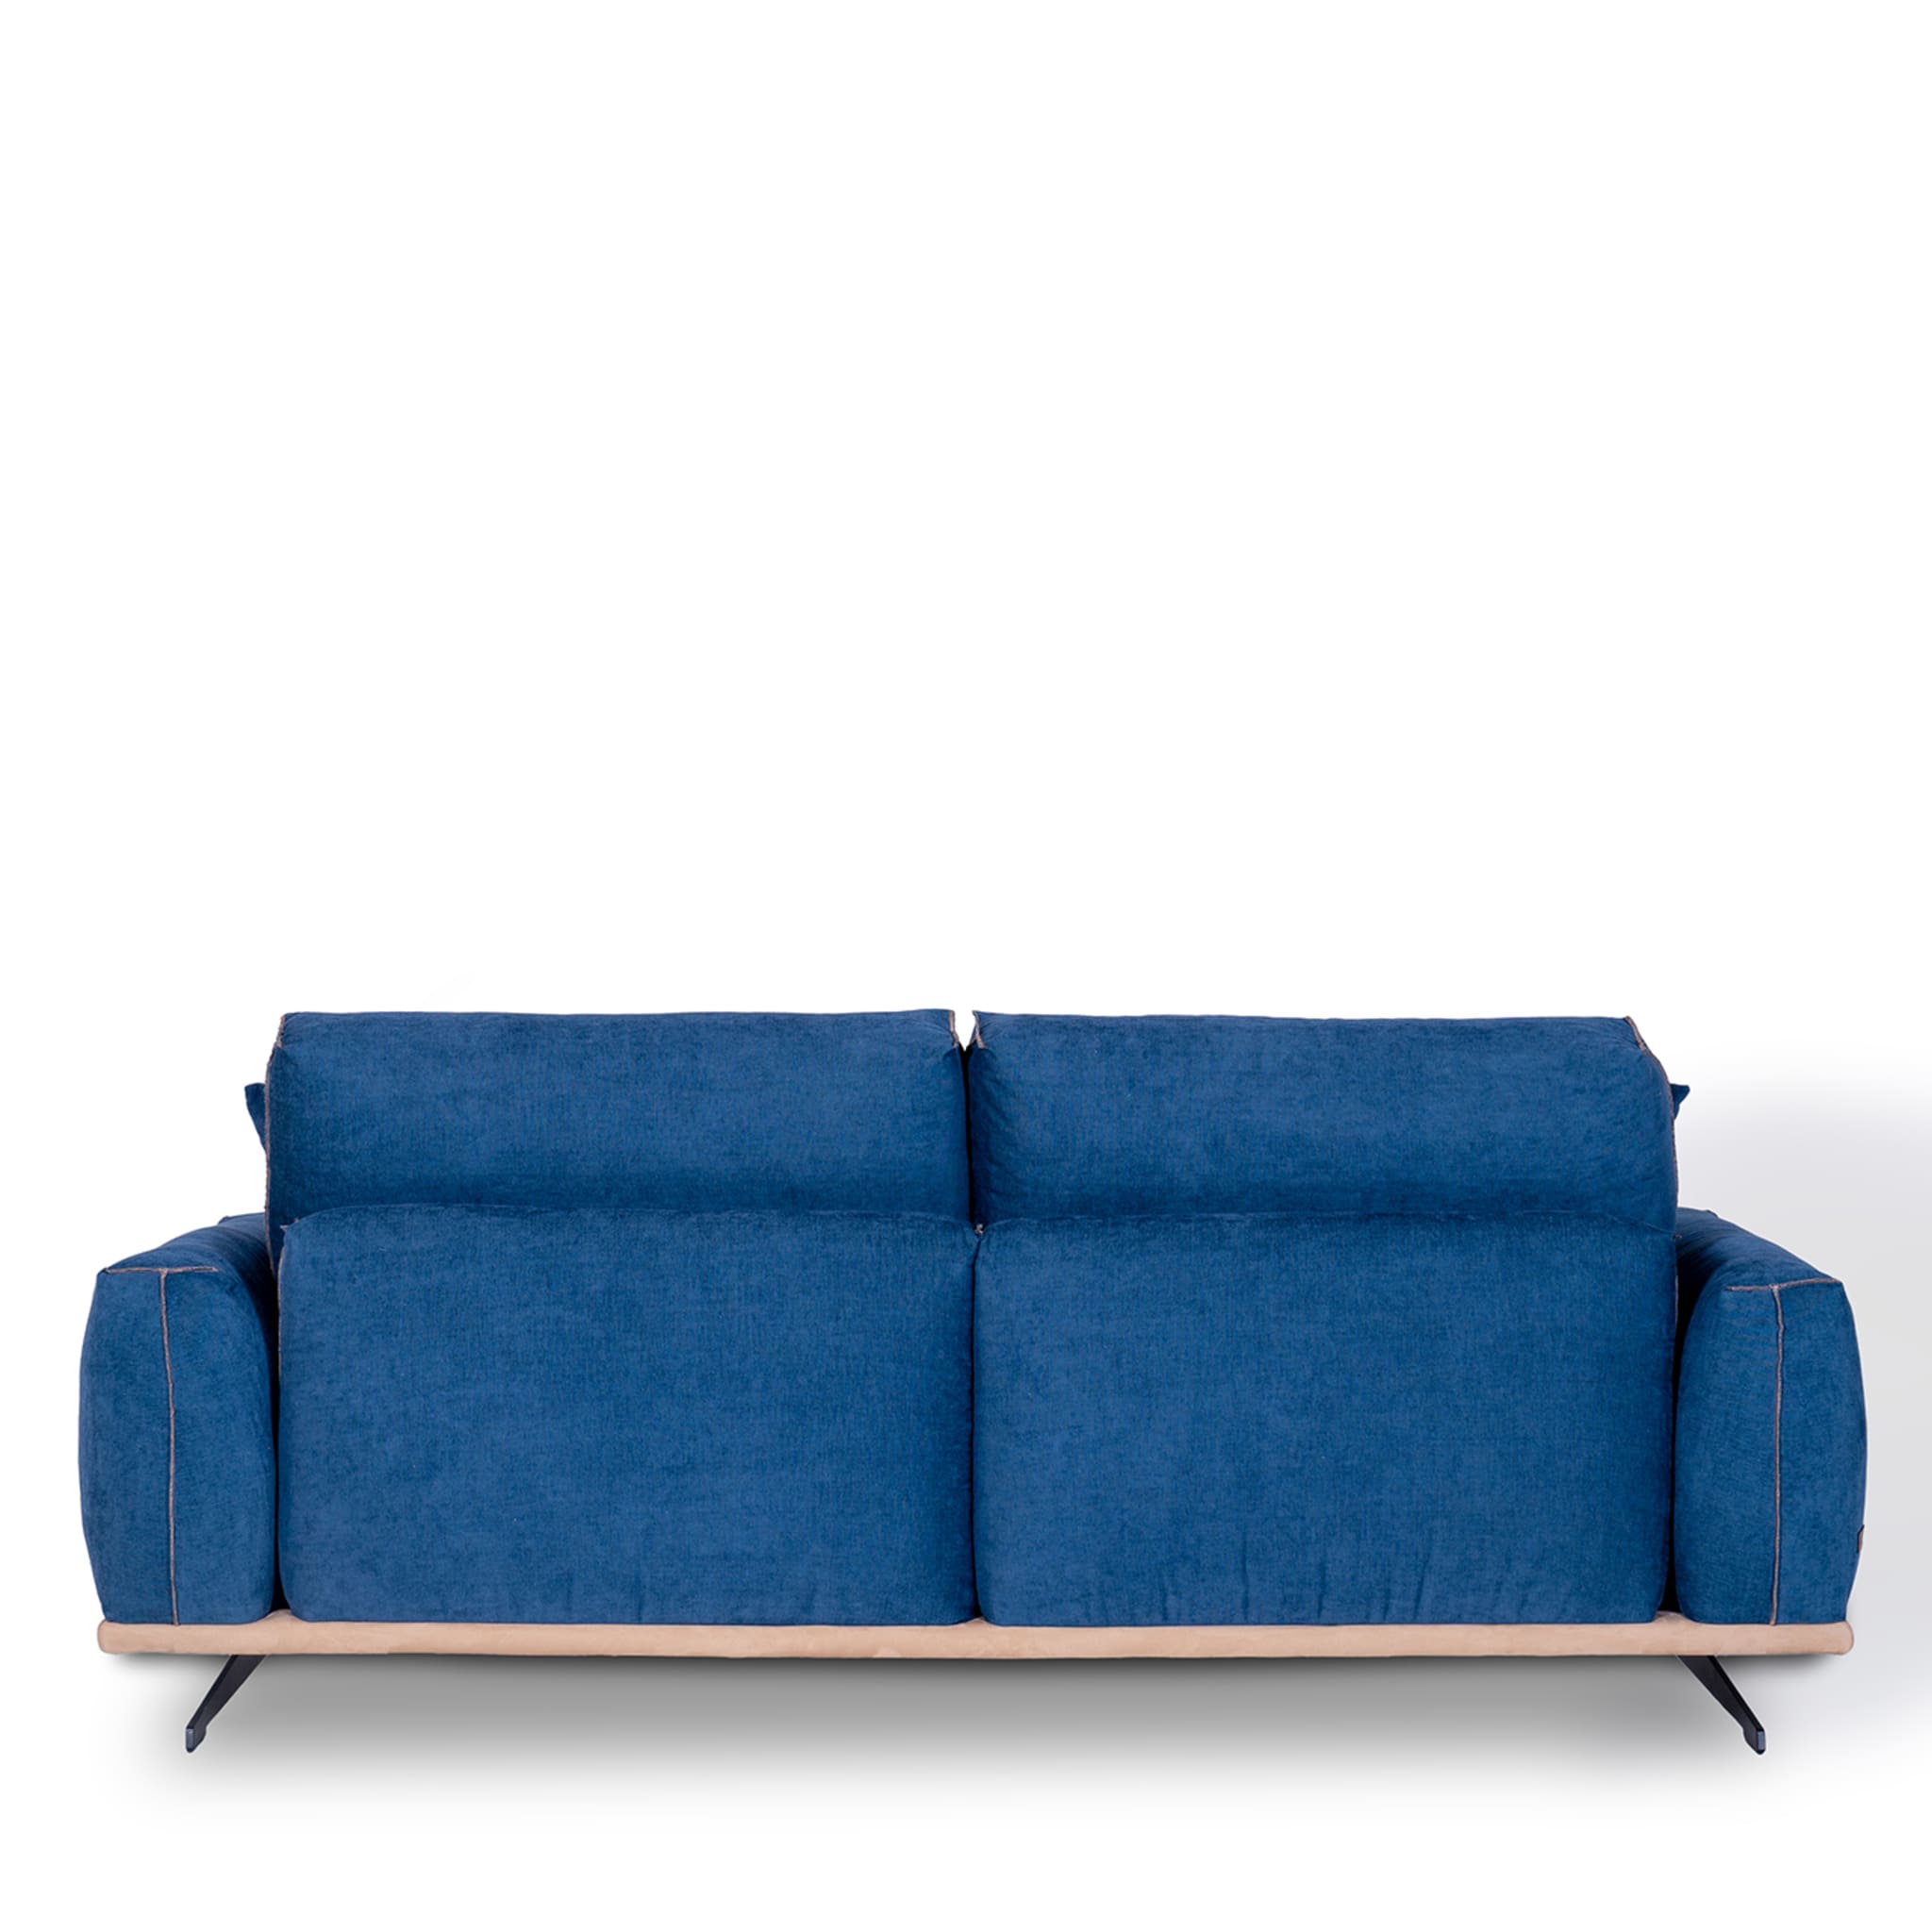 Boboli Blue 2-Seater Sofa by Marco & Giulio Mantellassi  - Alternative view 3